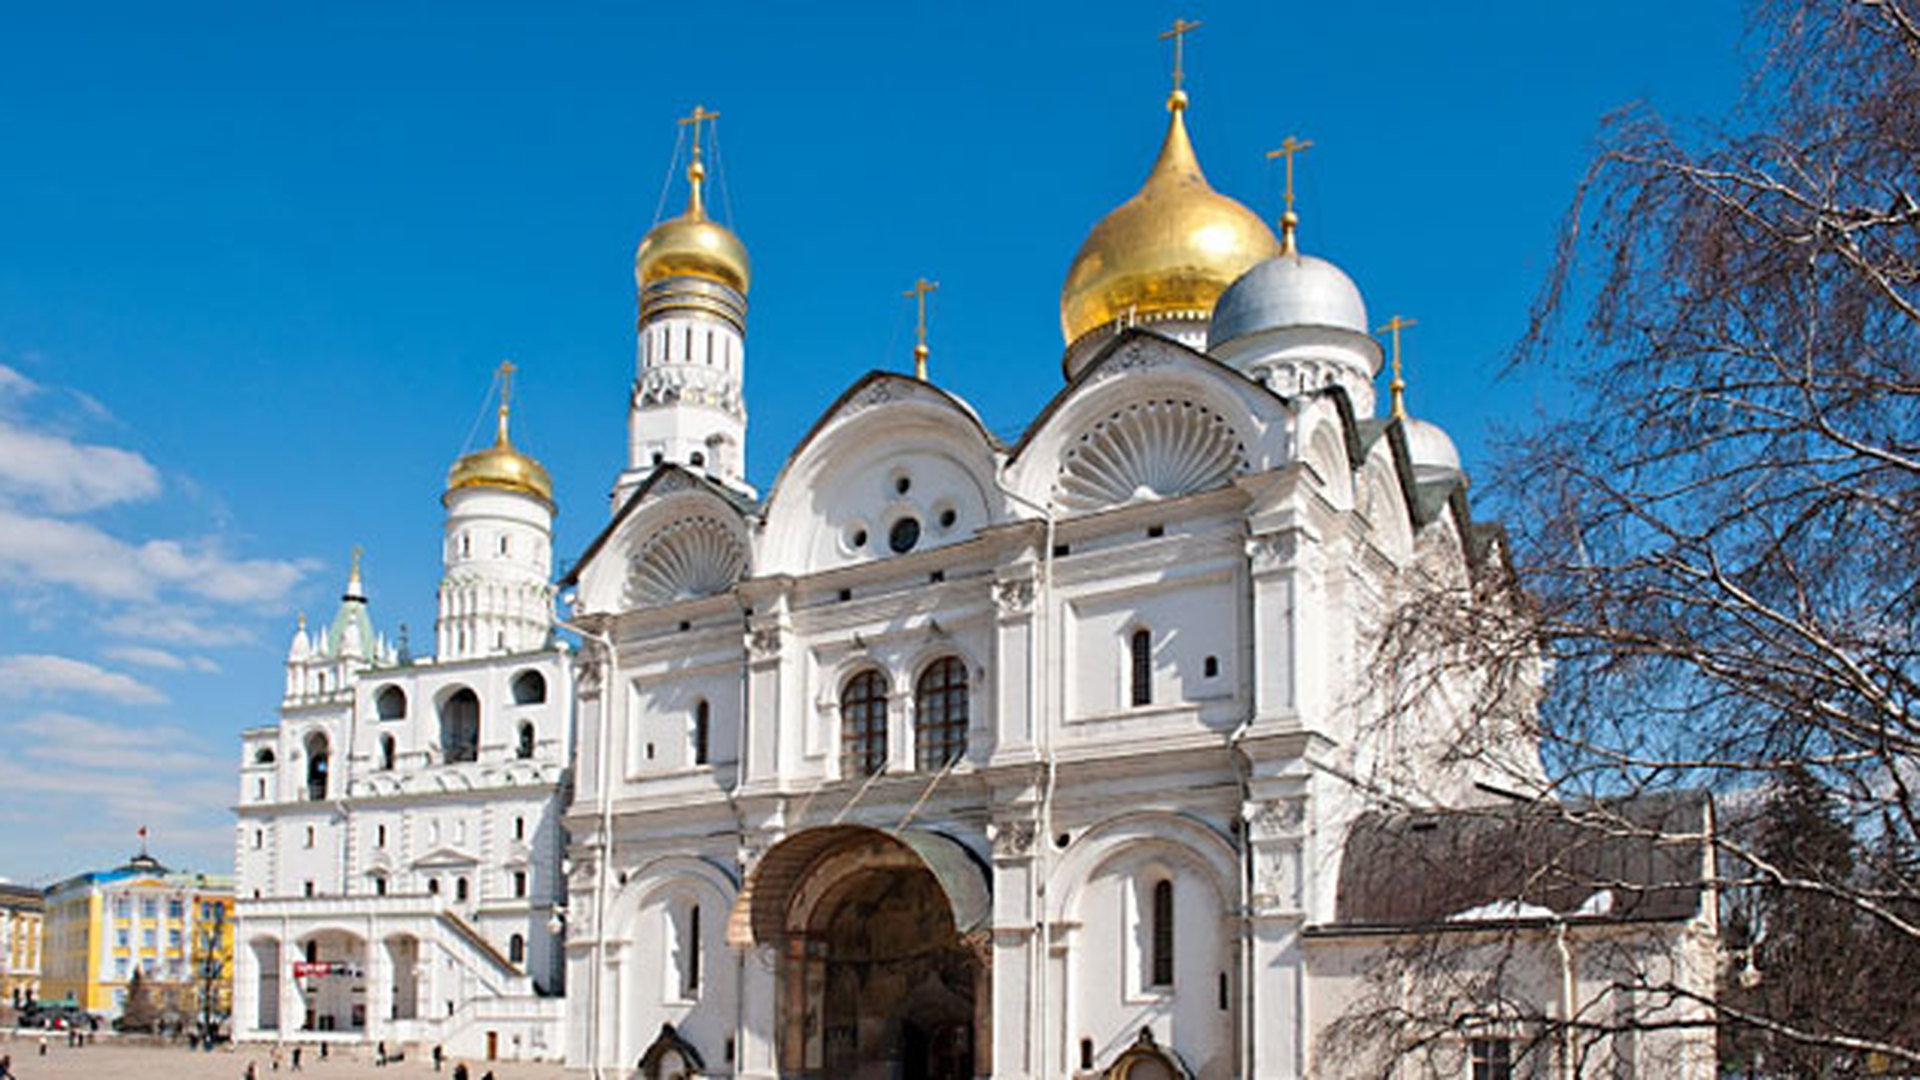 Архангельский собор Московского Кремля 15 век